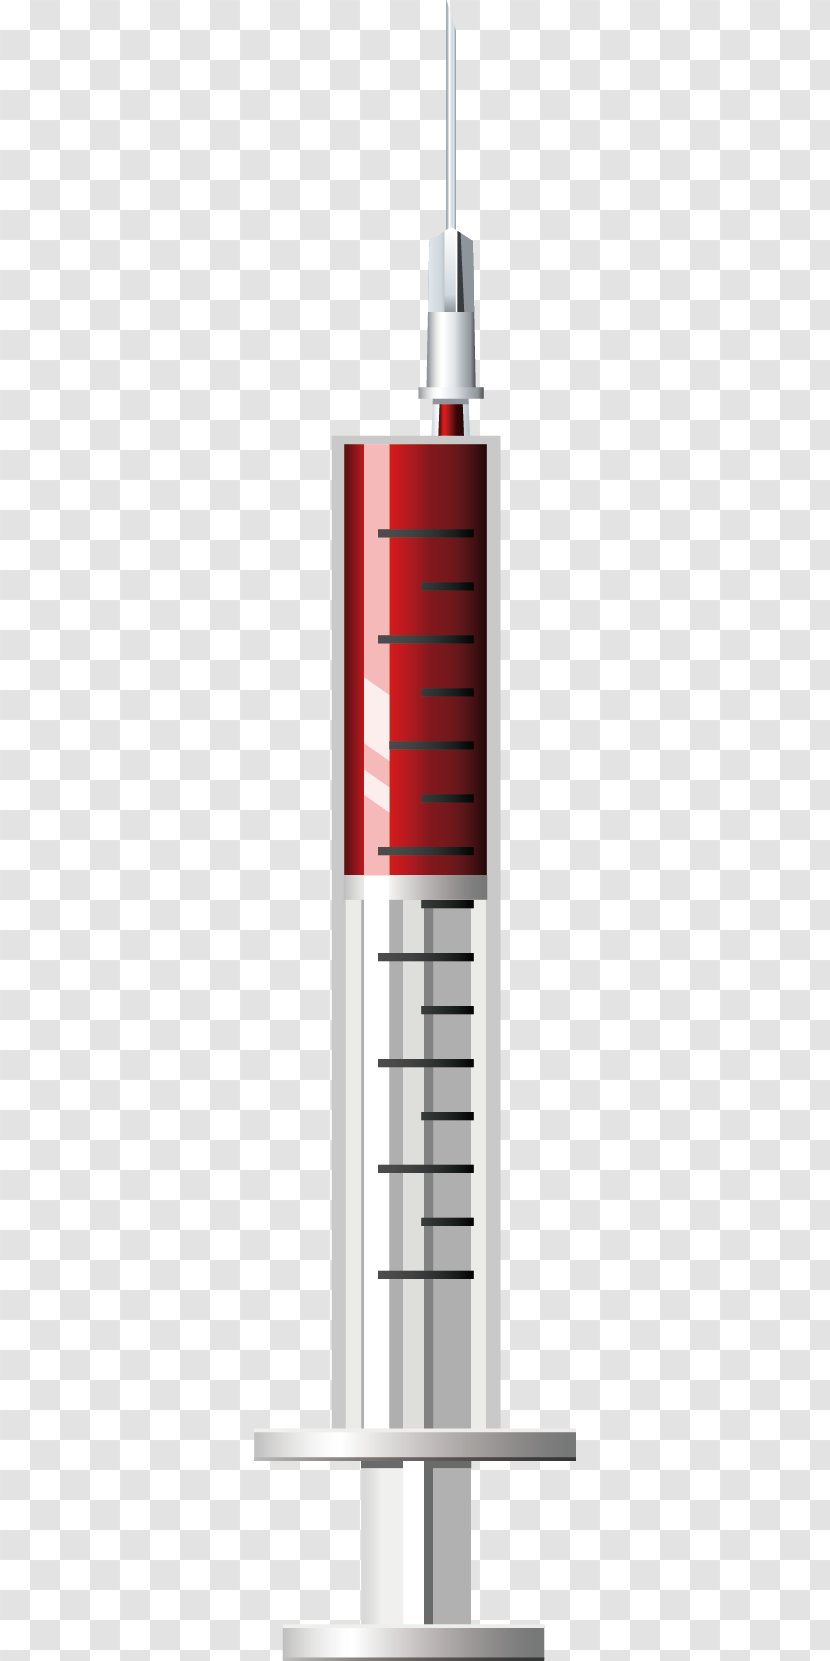 Syringe Hypodermic Needle Medical Equipment Medicine Clip Art - Red Syringes Transparent PNG